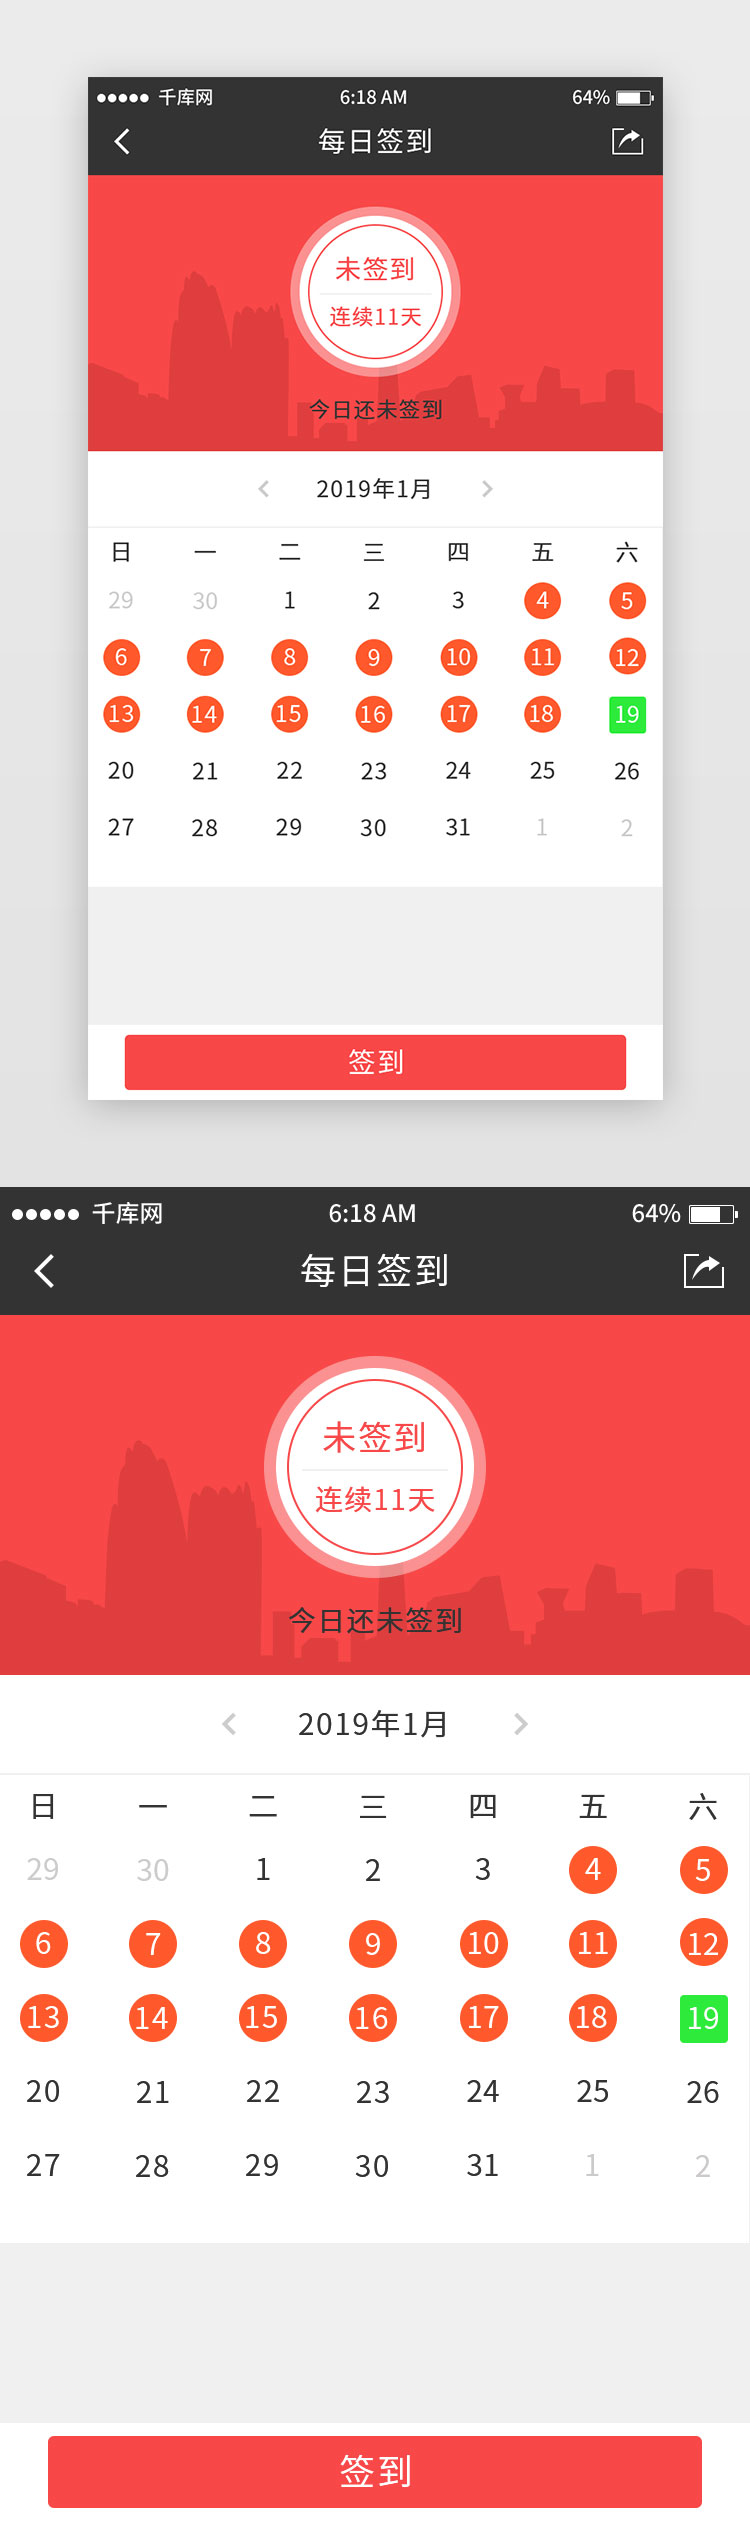 红色系中国风教育app签到页移动端界面图片